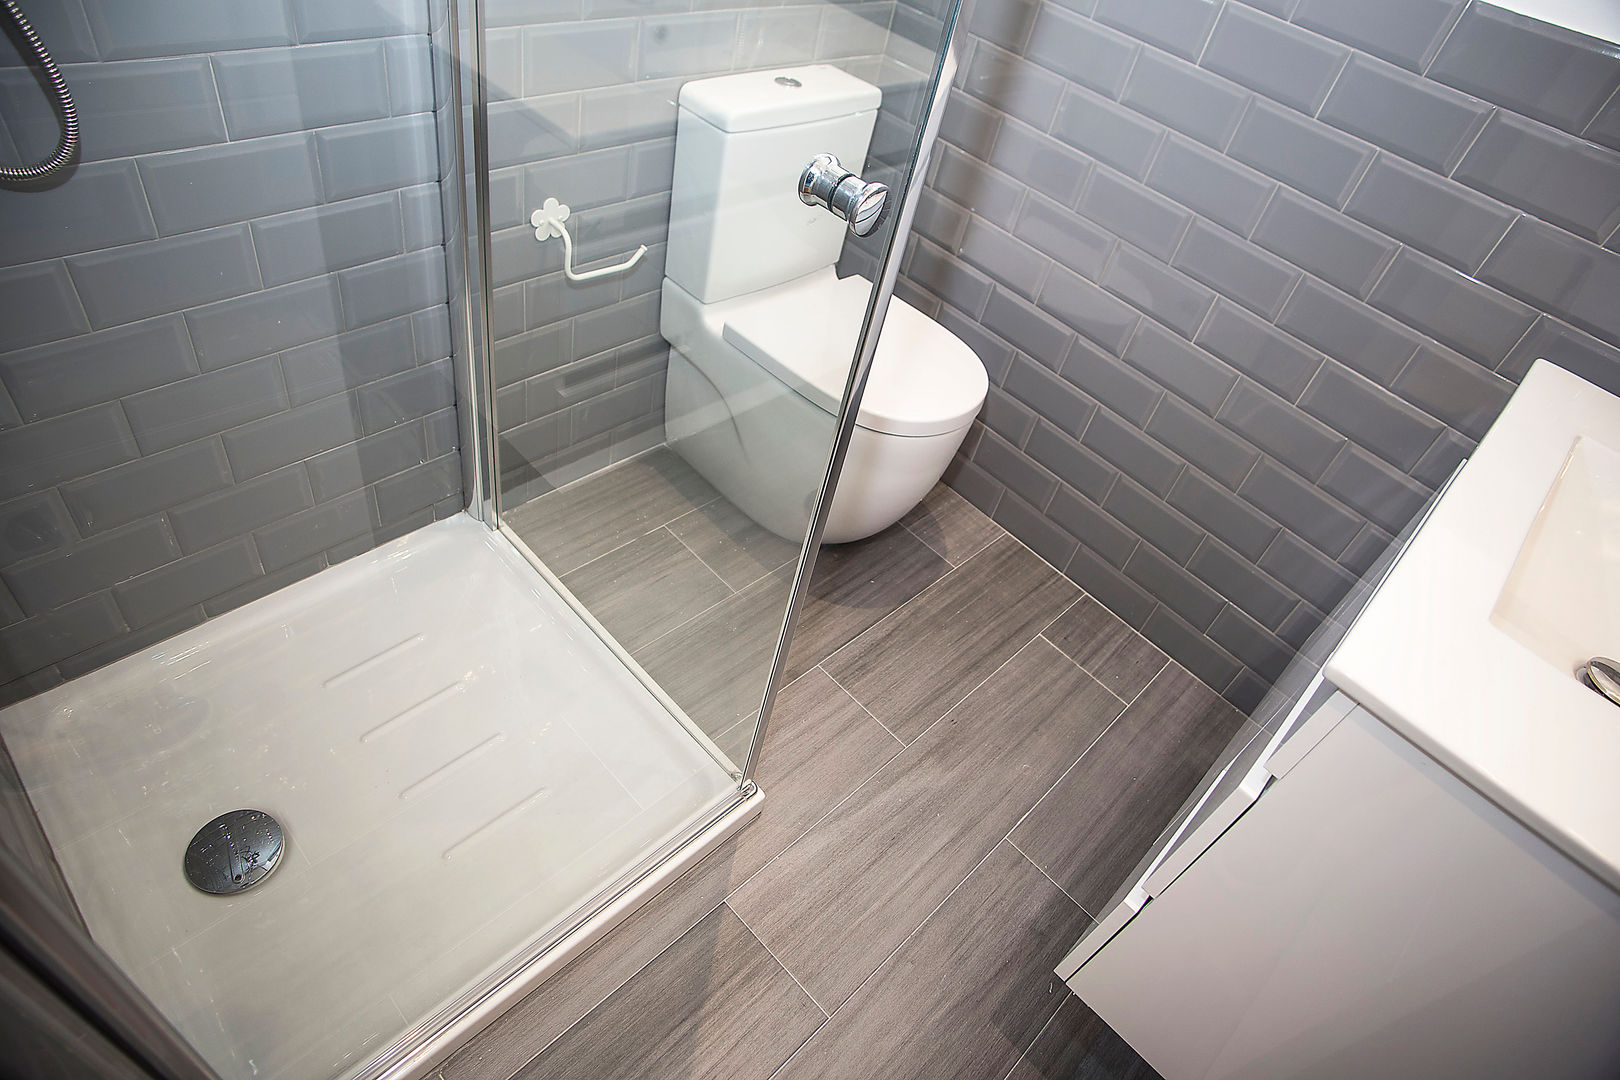 Cuarto de baño equipado Grupo Inventia Baños de estilo moderno Azulejos cuarto de baño,reforma de baño,diseño baño,azulejos,sanitarios